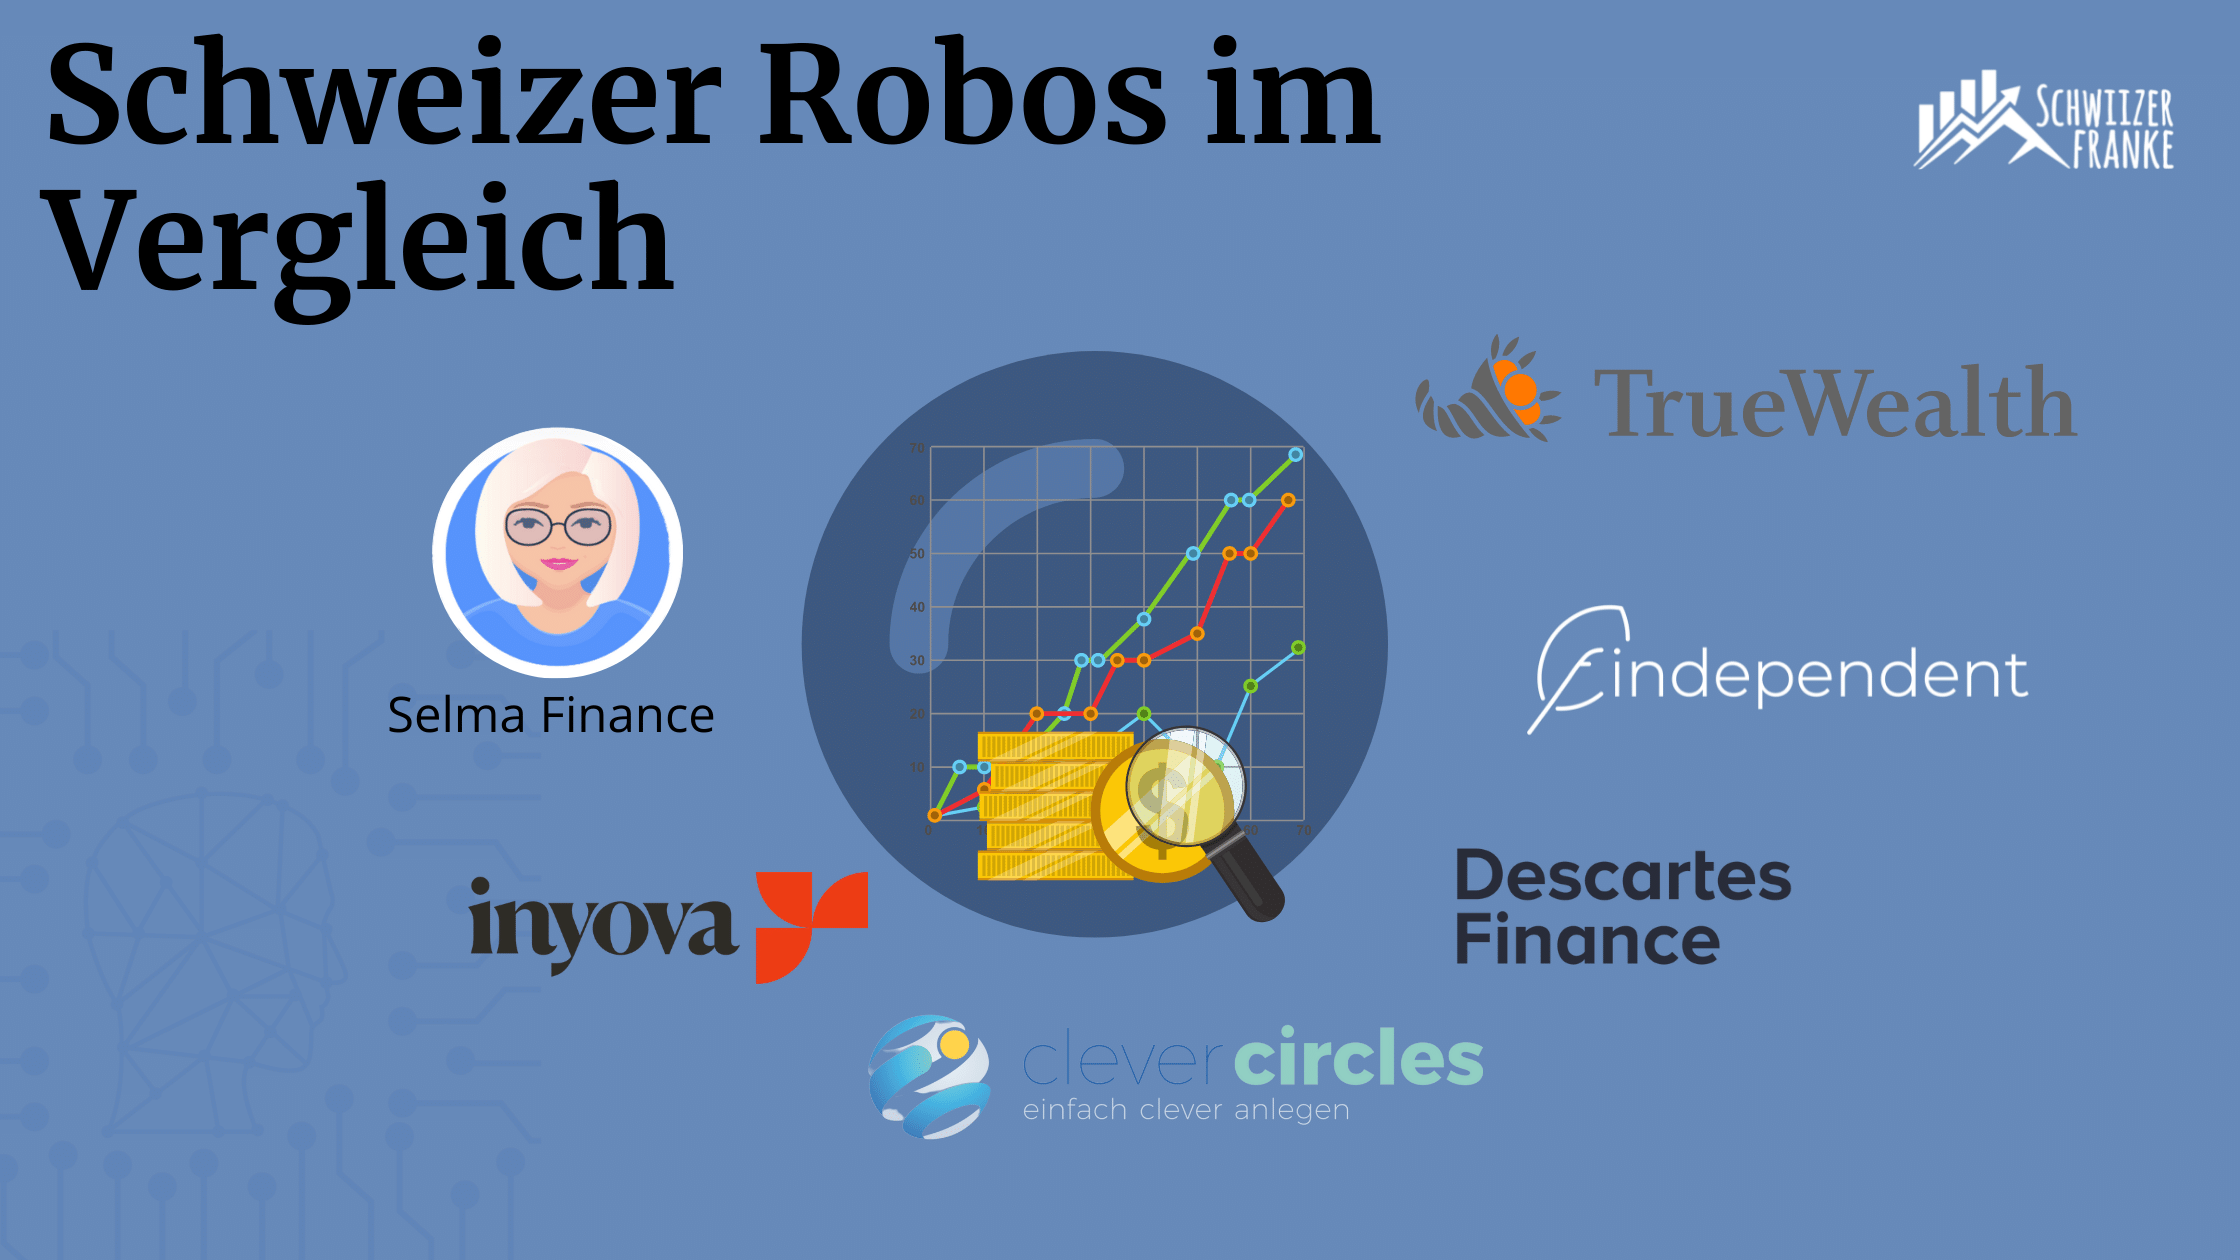 swiss robo advisor comparison report experiences swiss robo advisor comparison. best robo advisor switzerland in comparison the experiences findependent vs true wealth are good.